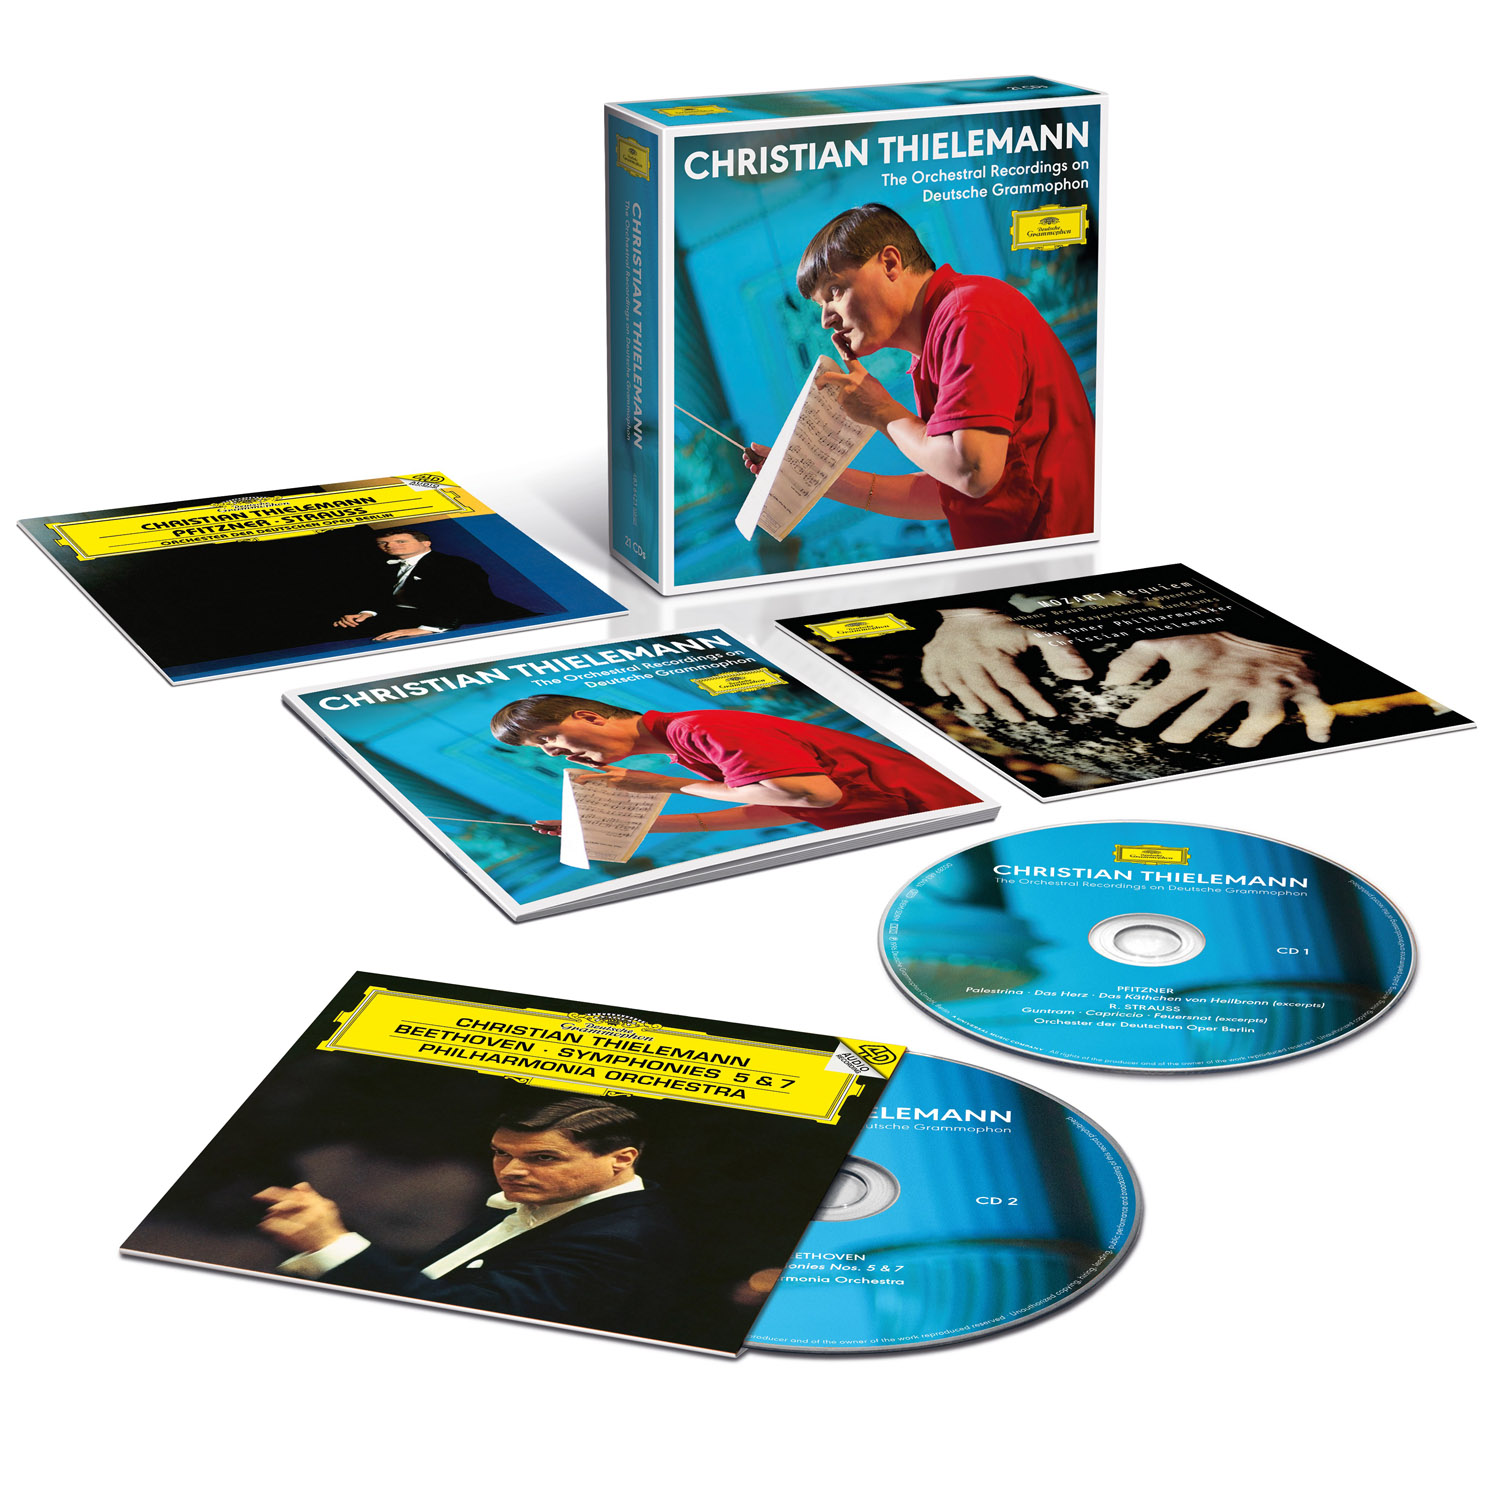 크리스티안 틸레만 DG 관현악 전집 (Christian Thielemann - The Complete Orchestral Recordings on DG)